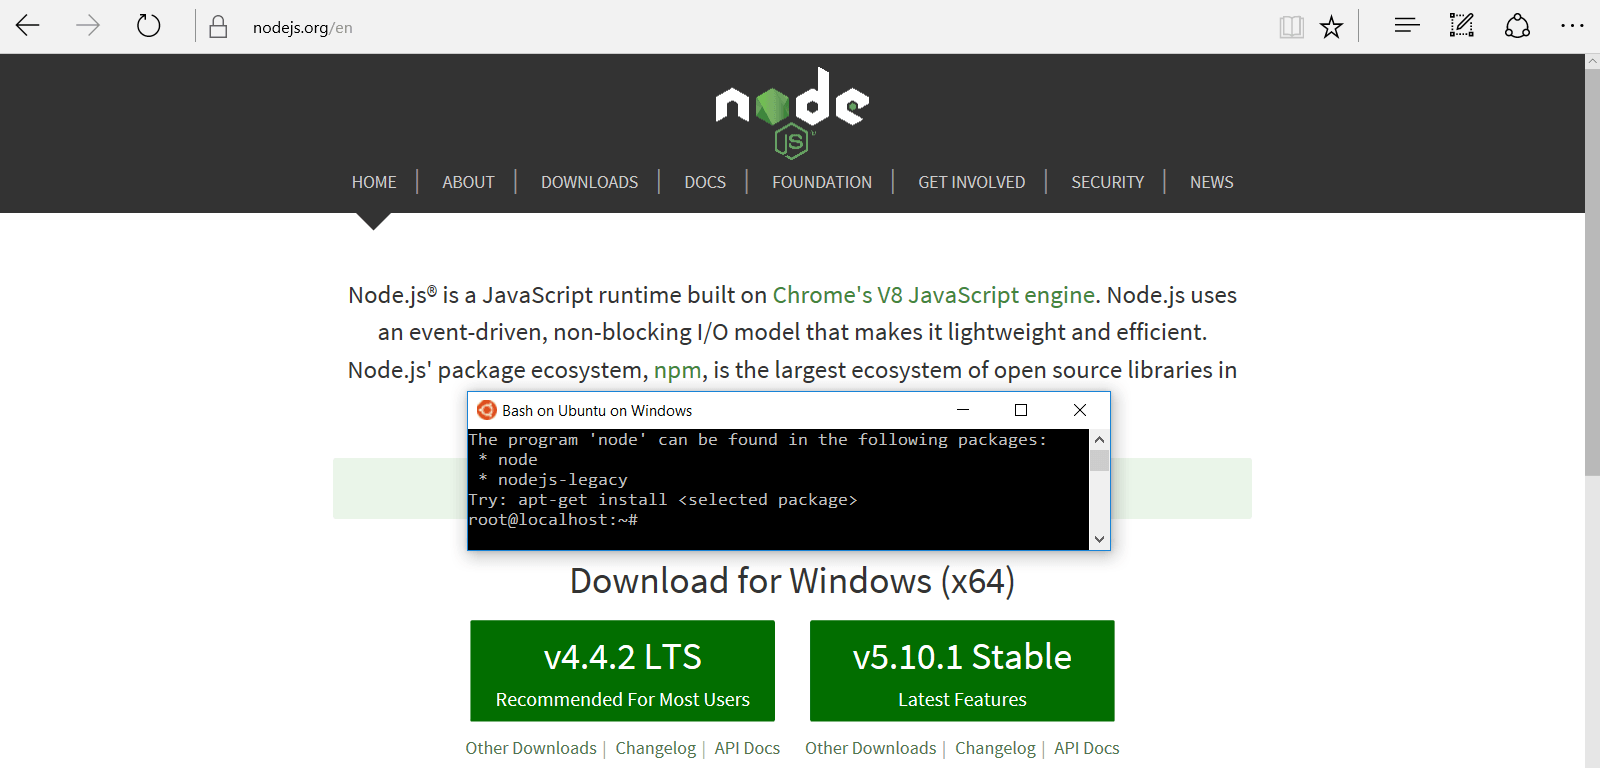 nodejs offering Windows installer